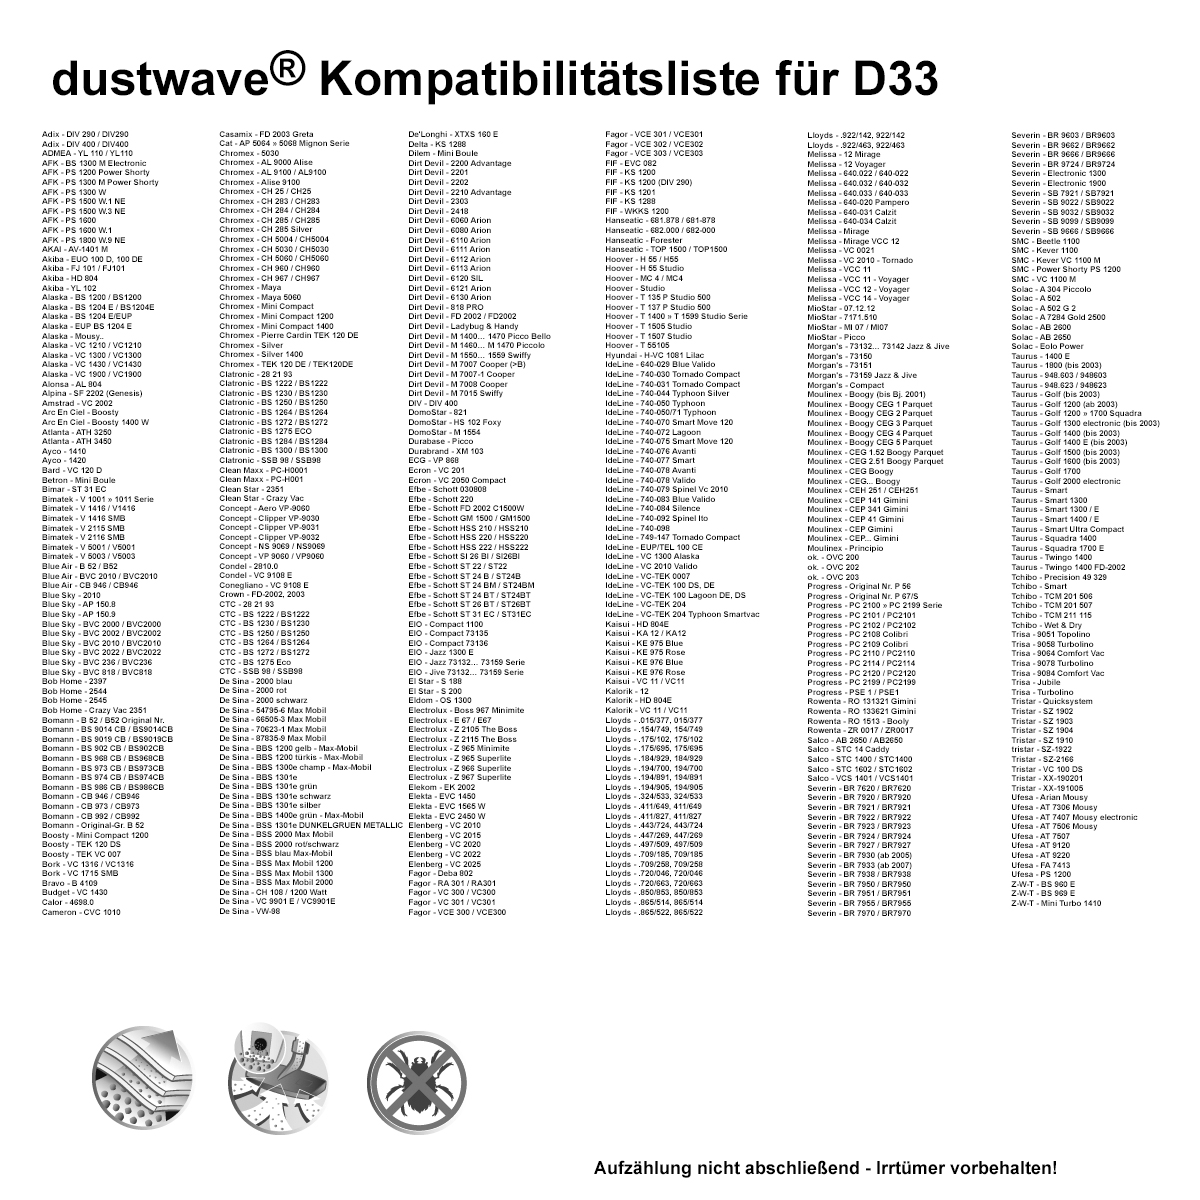 Dustwave® 20 Staubsaugerbeutel für Bimatek V 5001 / V5001 - hocheffizient, mehrlagiges Mikrovlies mit Hygieneverschluss - Made in Germany